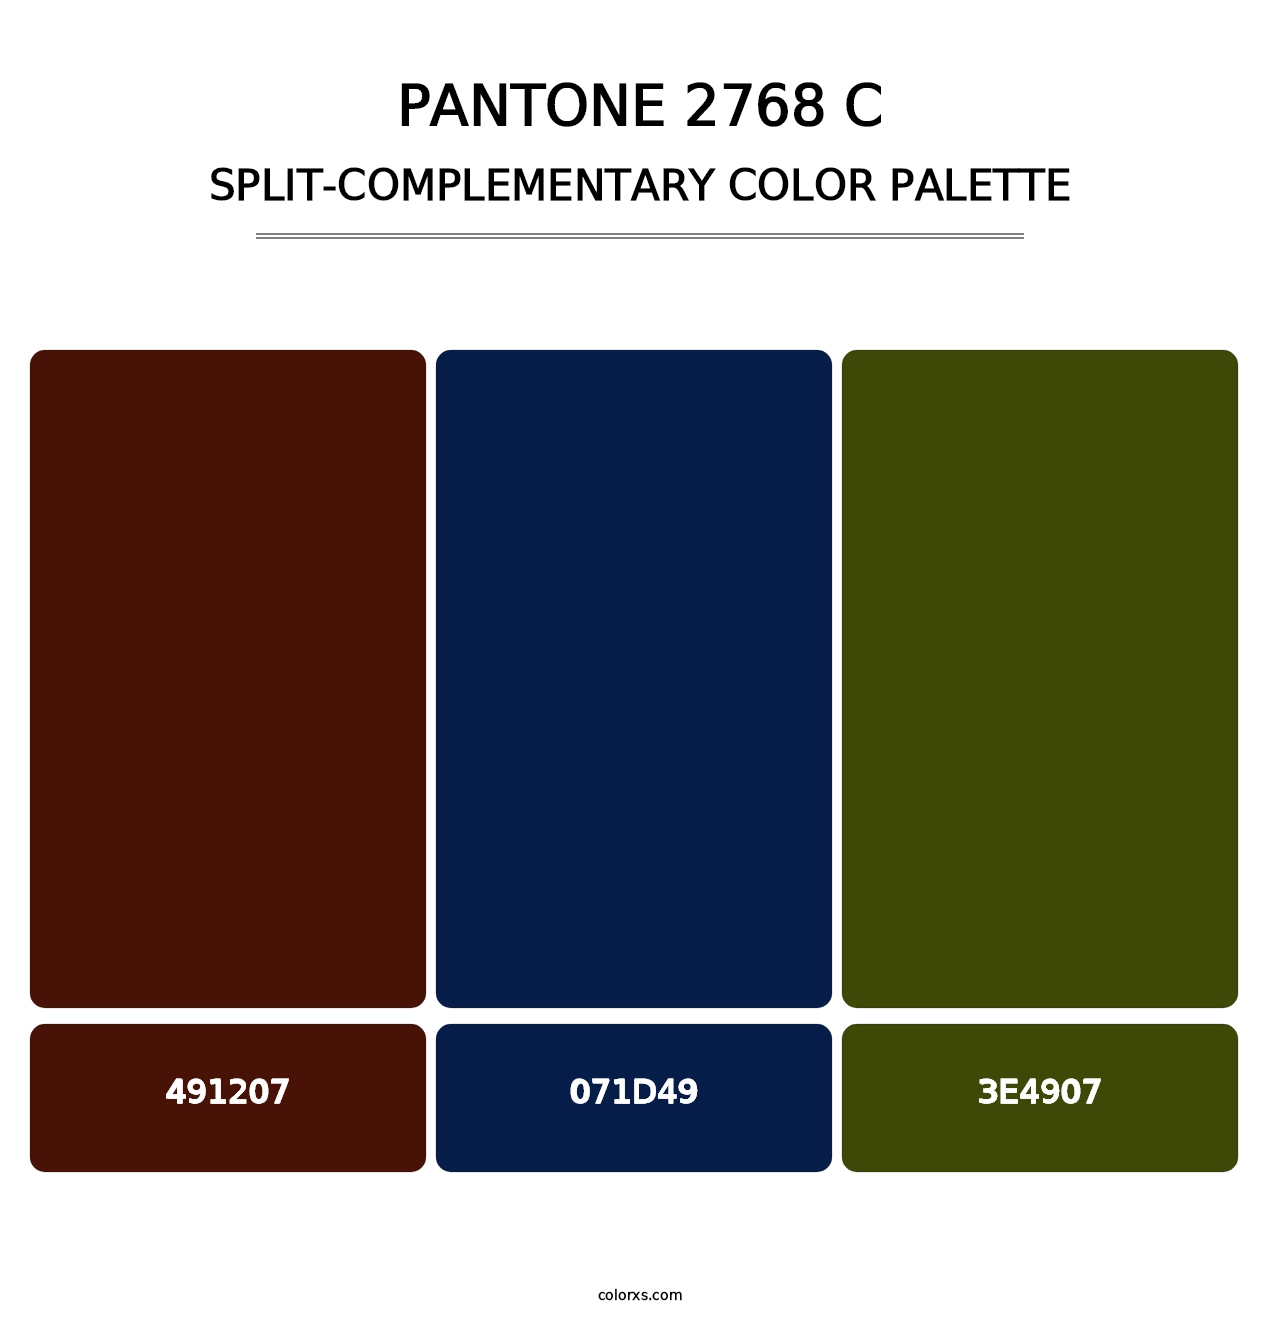 PANTONE 2768 C - Split-Complementary Color Palette